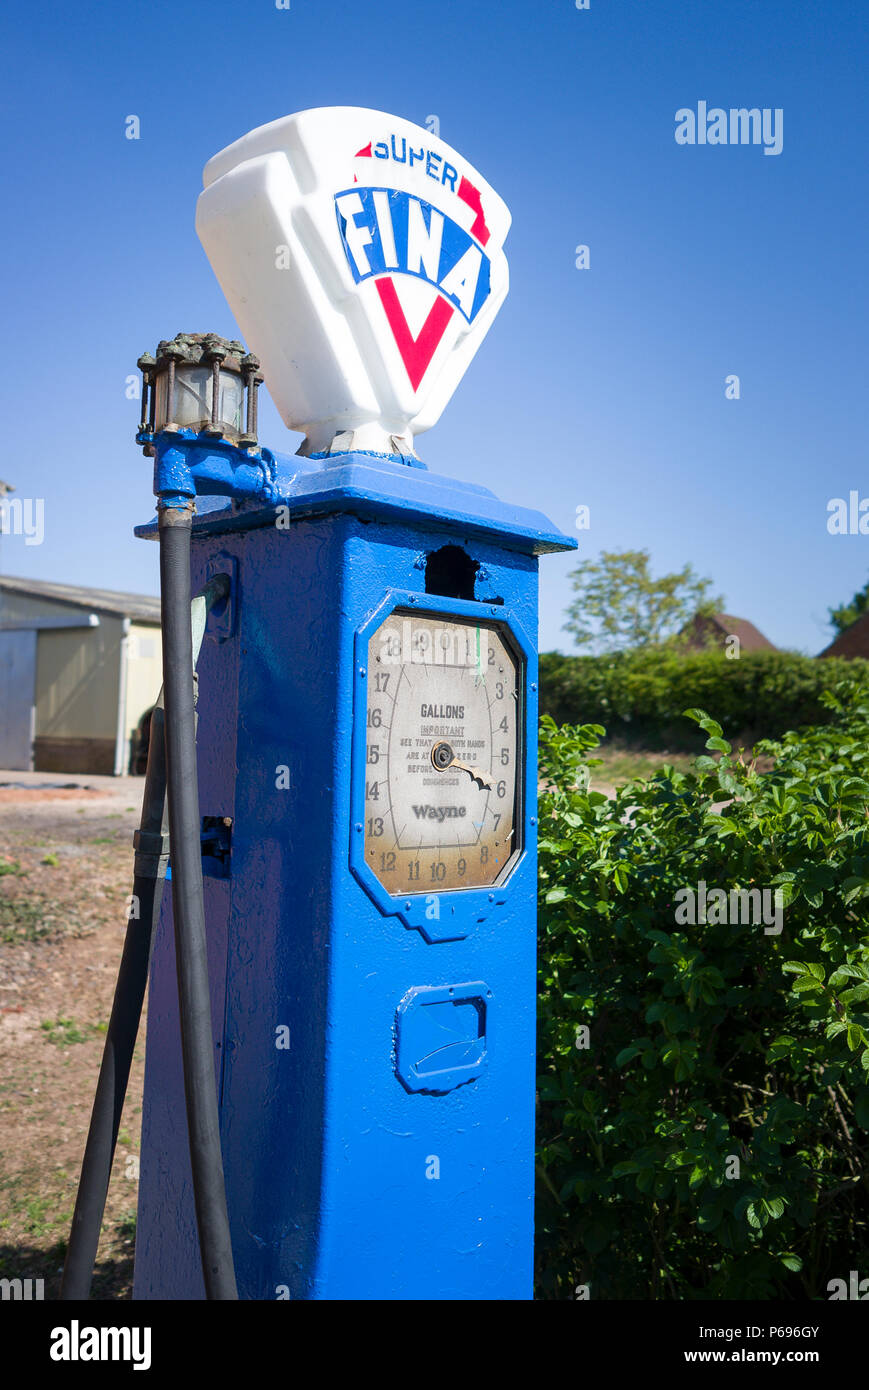 Une vieille pompe à essence Fina Super dans une propriété privée montrant vieille mesure analogique en gallons impériaux. Banque D'Images